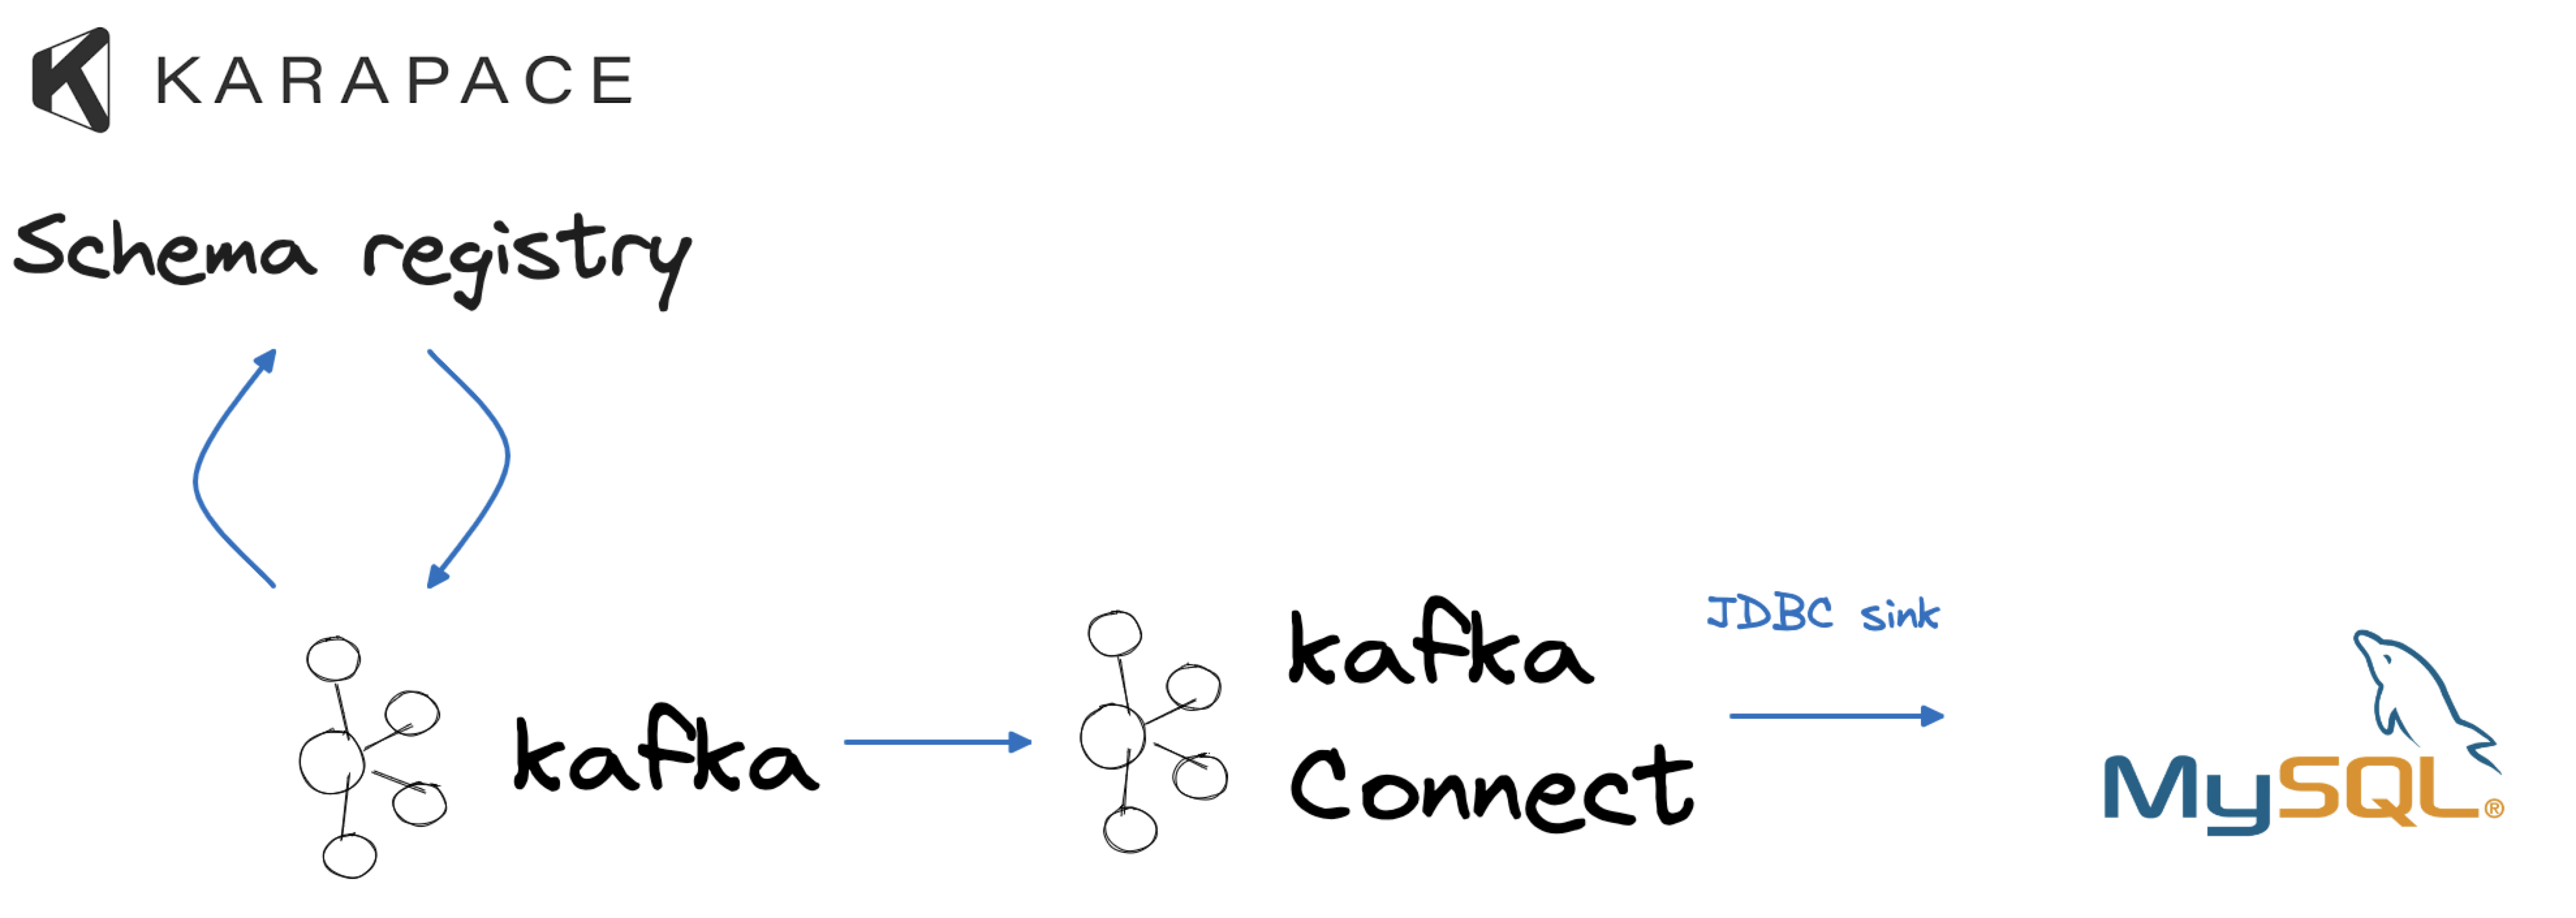 Sink data to MySQL with Kafka Connect JDBC sink